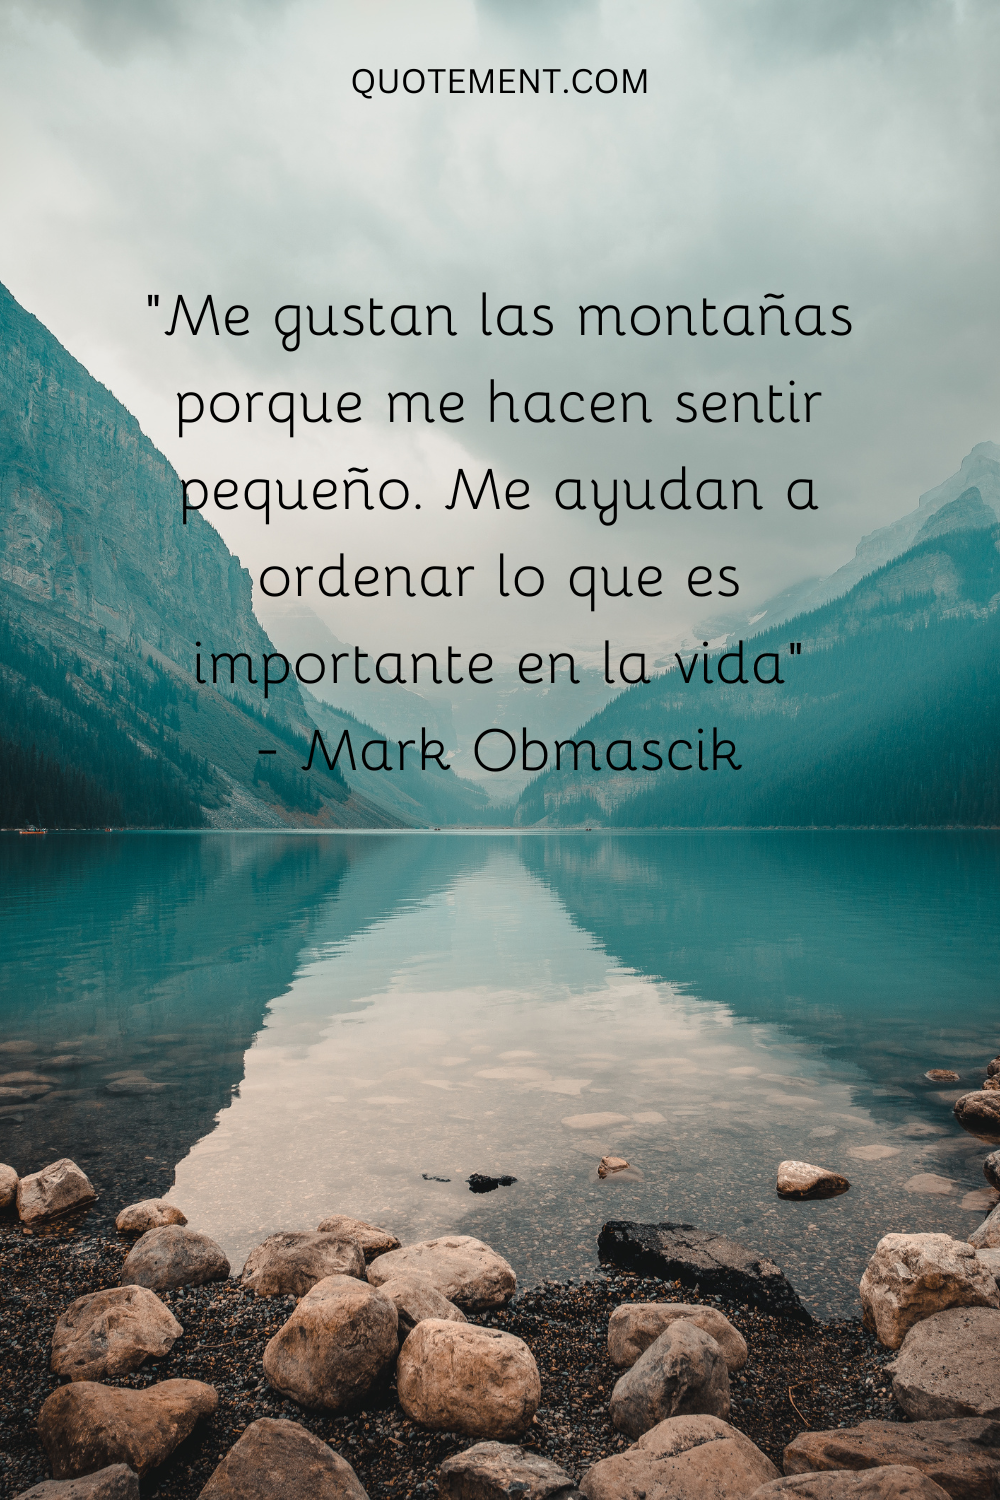 "Me gustan las montañas porque me hacen sentir pequeño. Me ayudan a ordenar lo que es importante en la vida"- Mark Obmascik